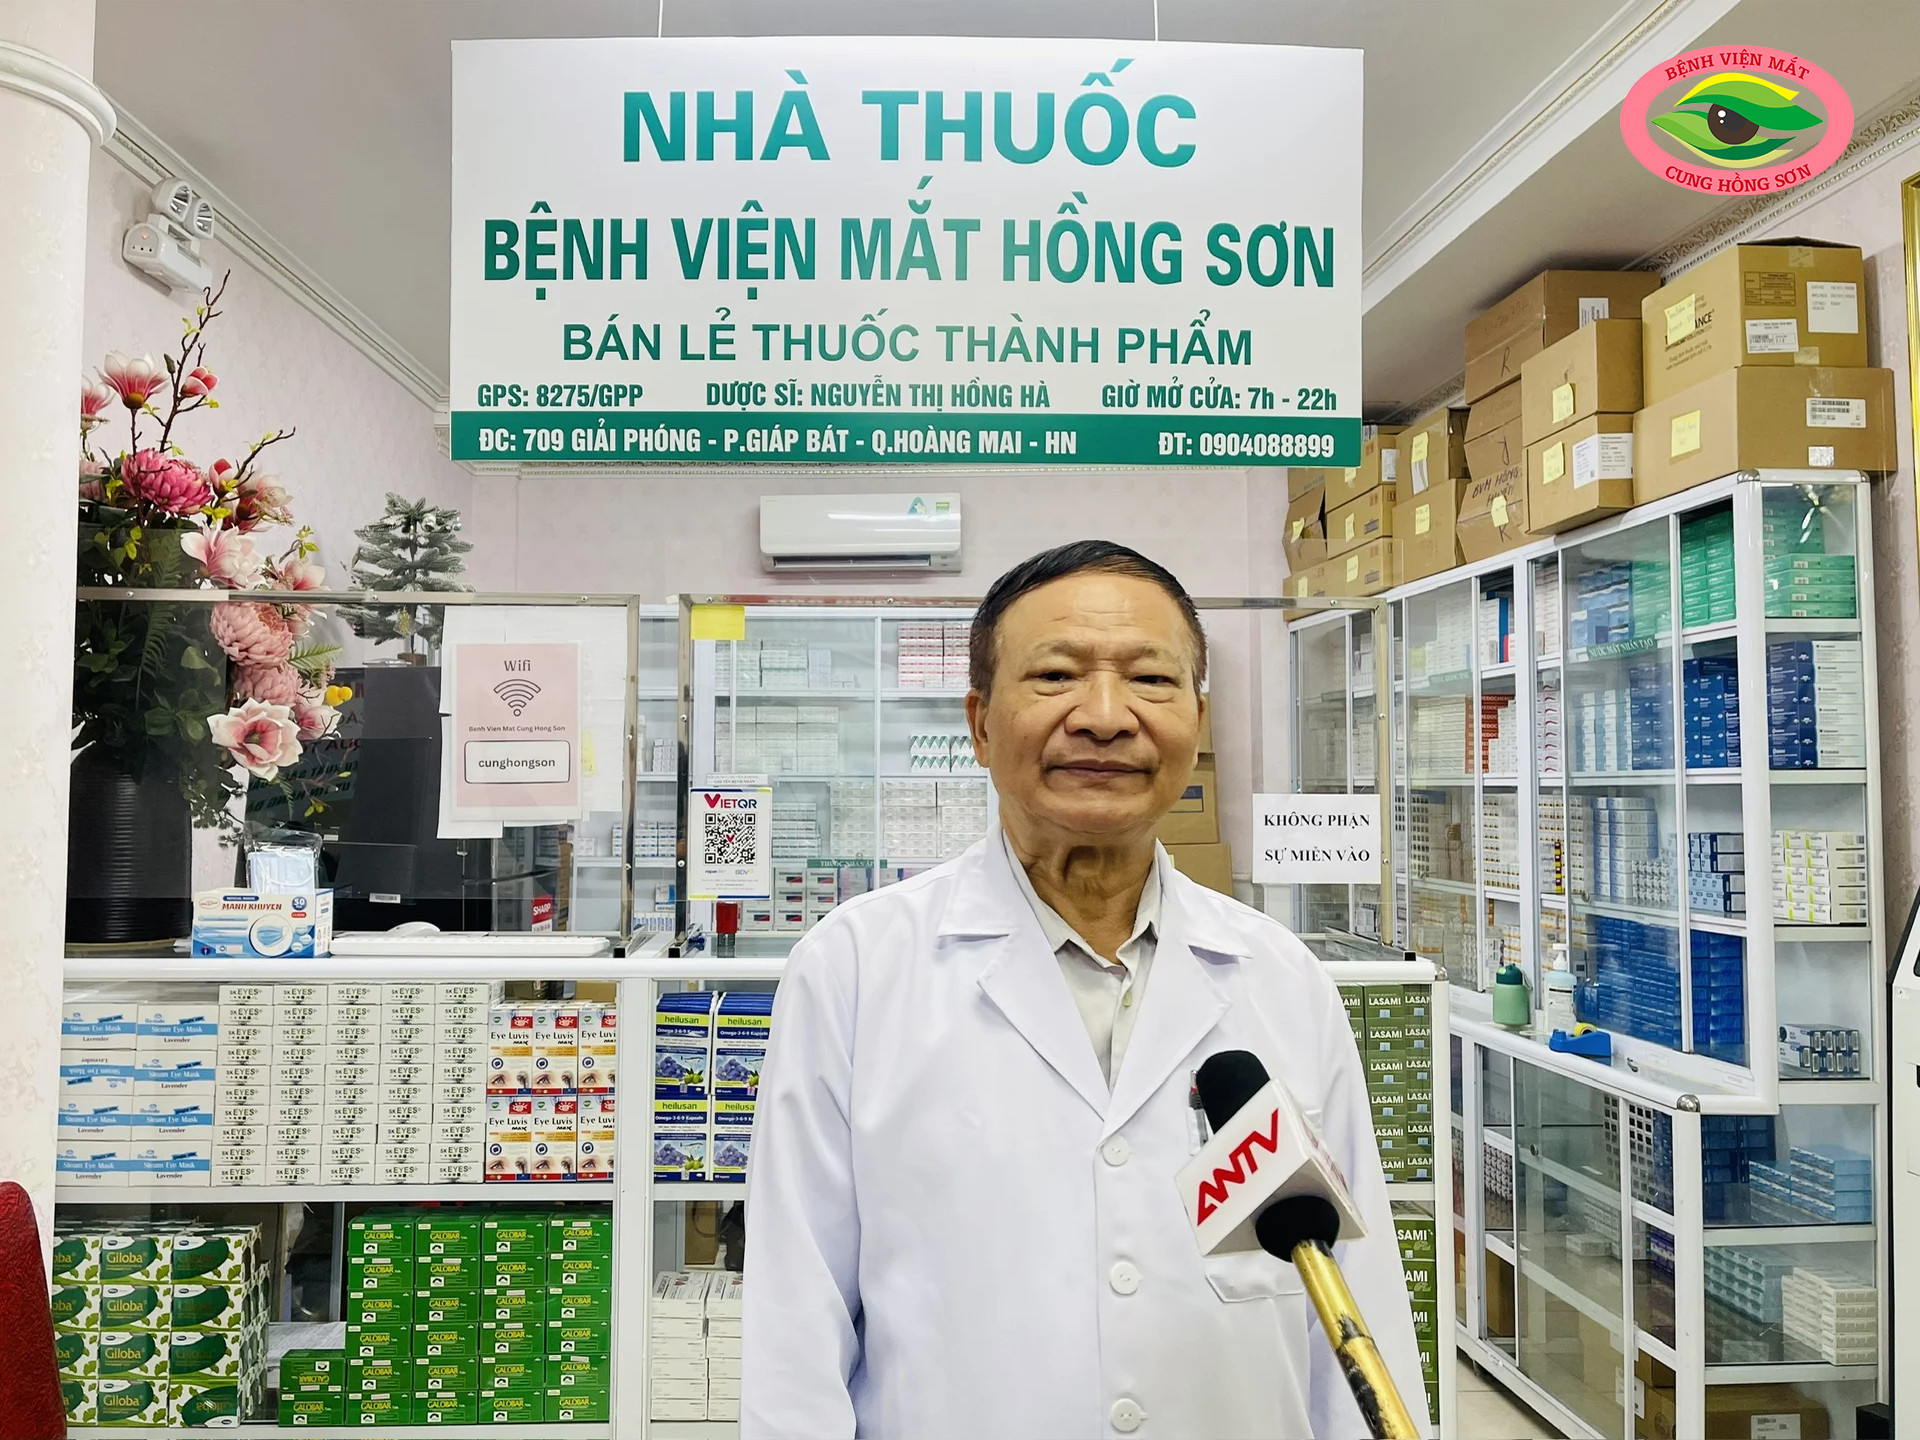 Bác sĩ Võ Văn Phi- Giám đốc Bệnh viện mắt Hồng Sơn